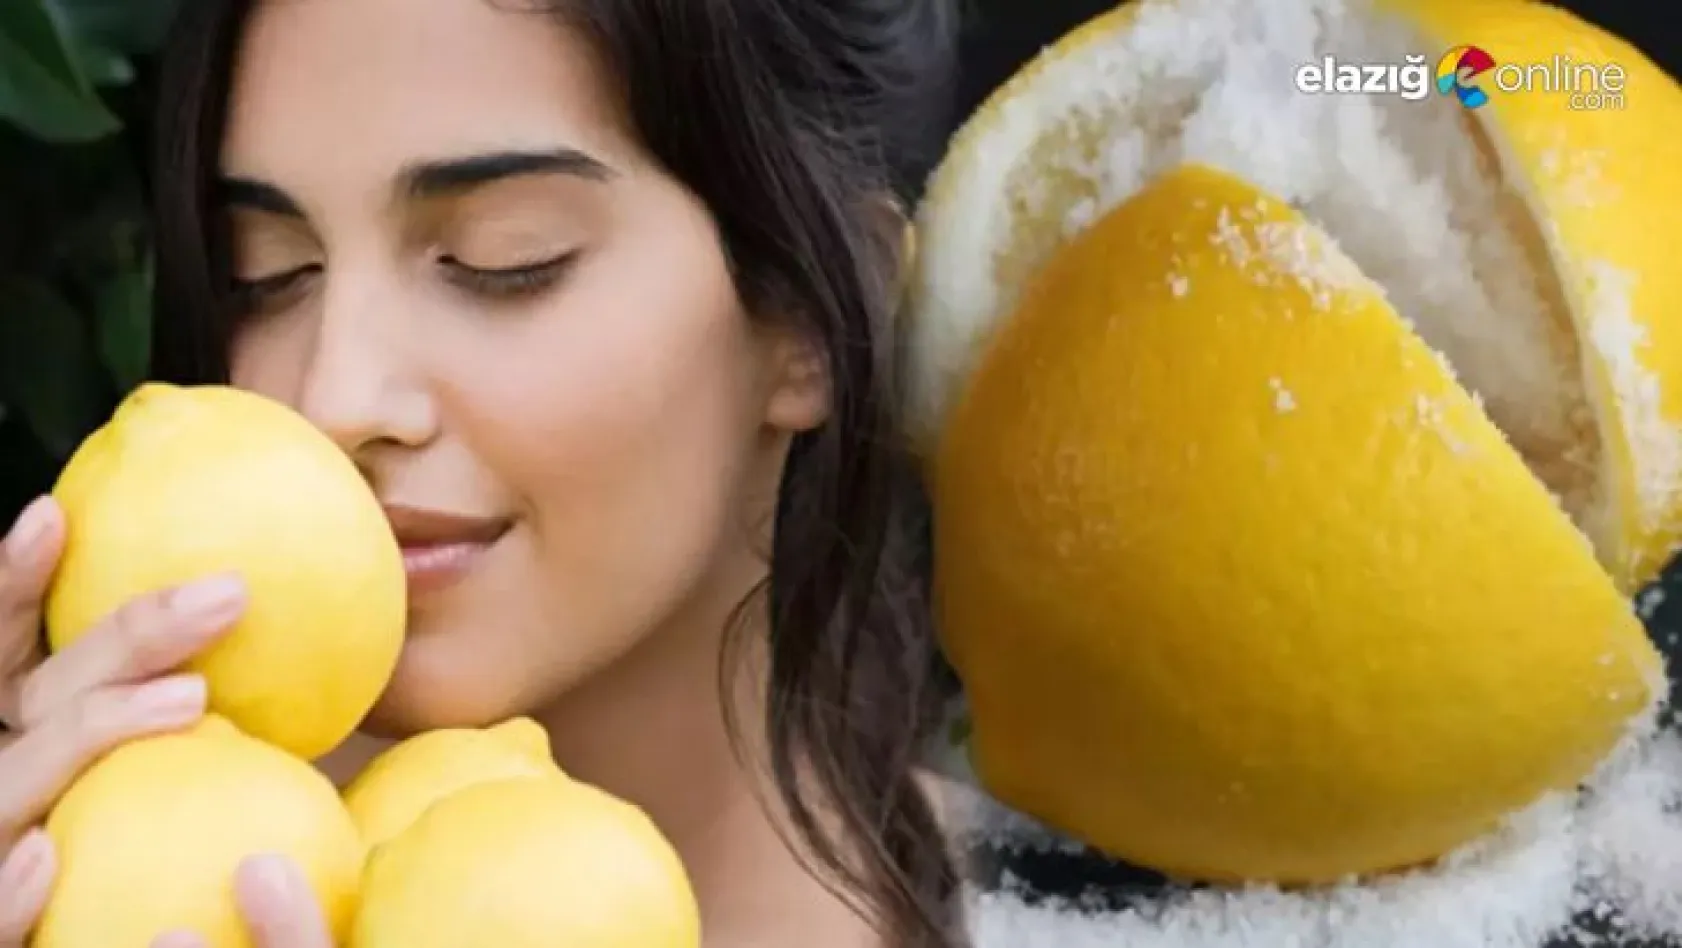 Cilde faydası olan limon nasıl uygulanır?